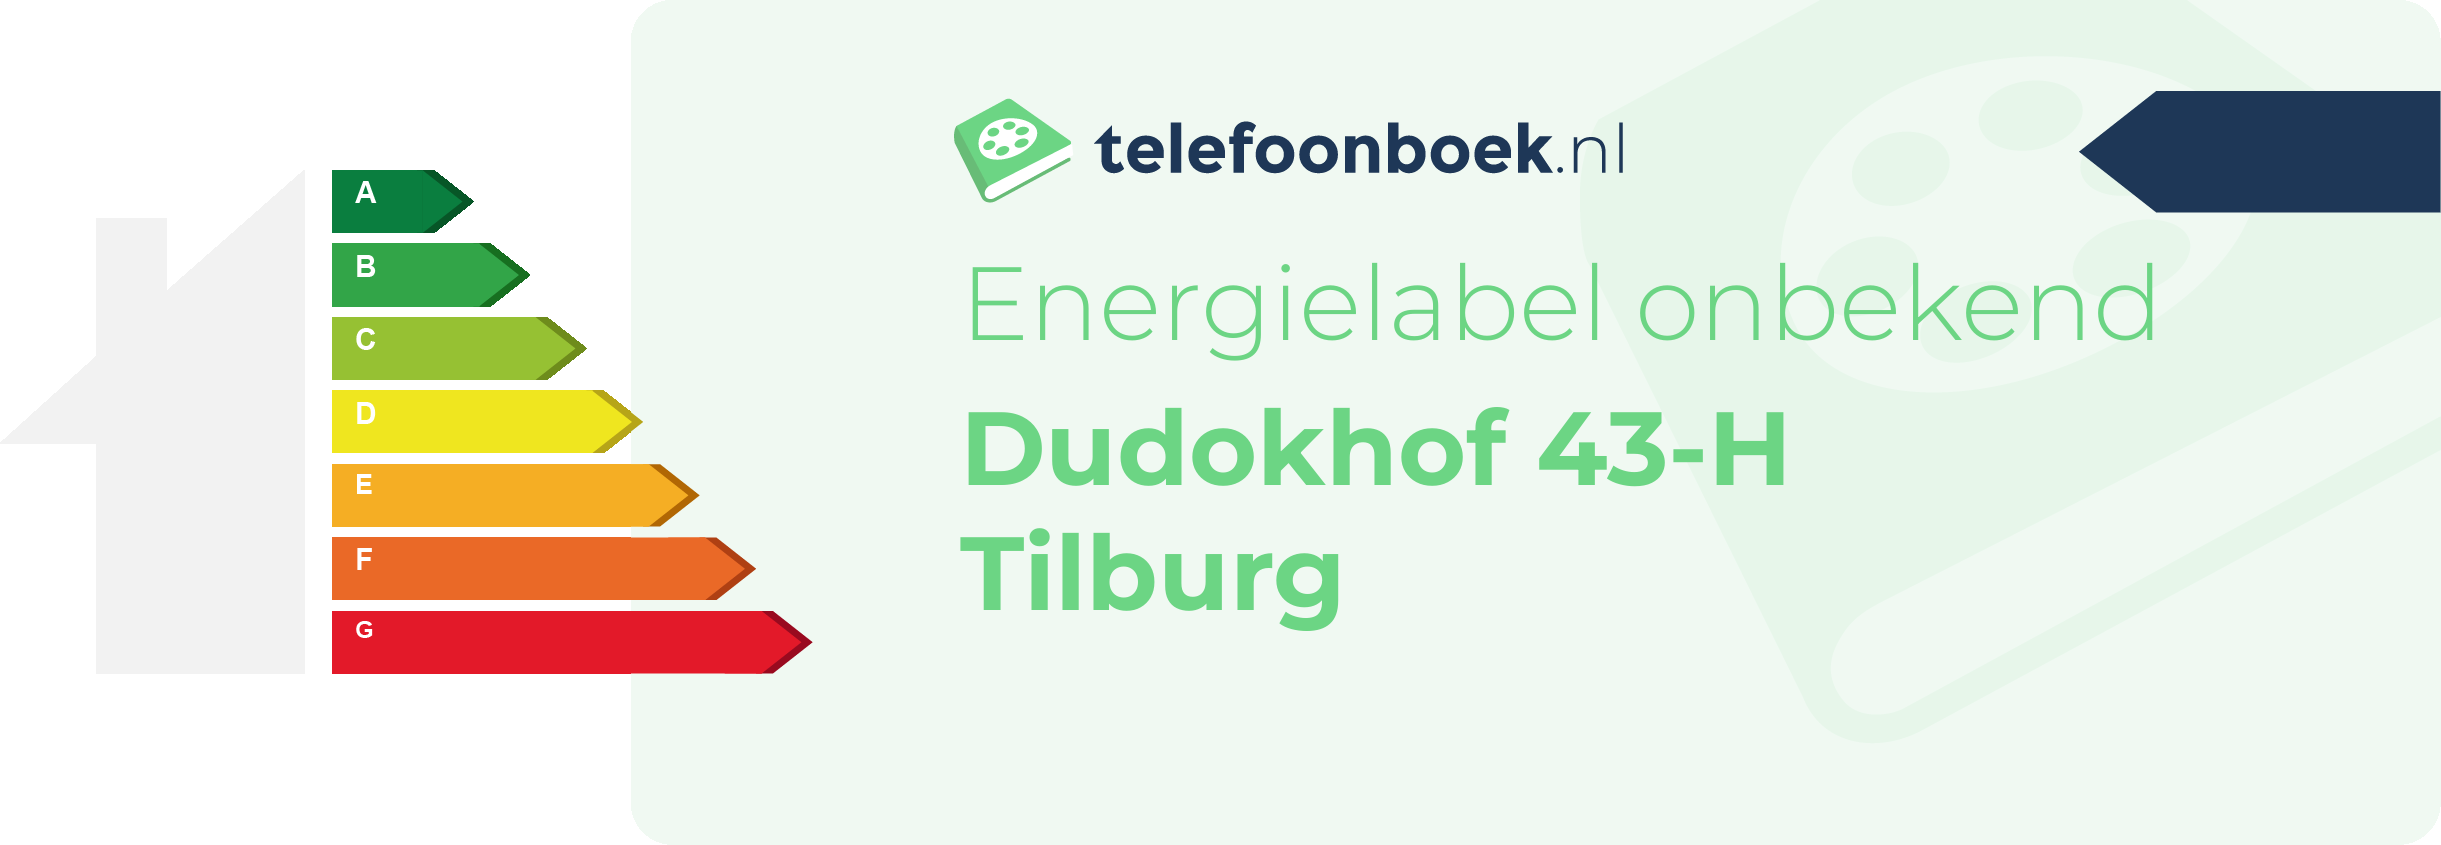 Energielabel Dudokhof 43-H Tilburg